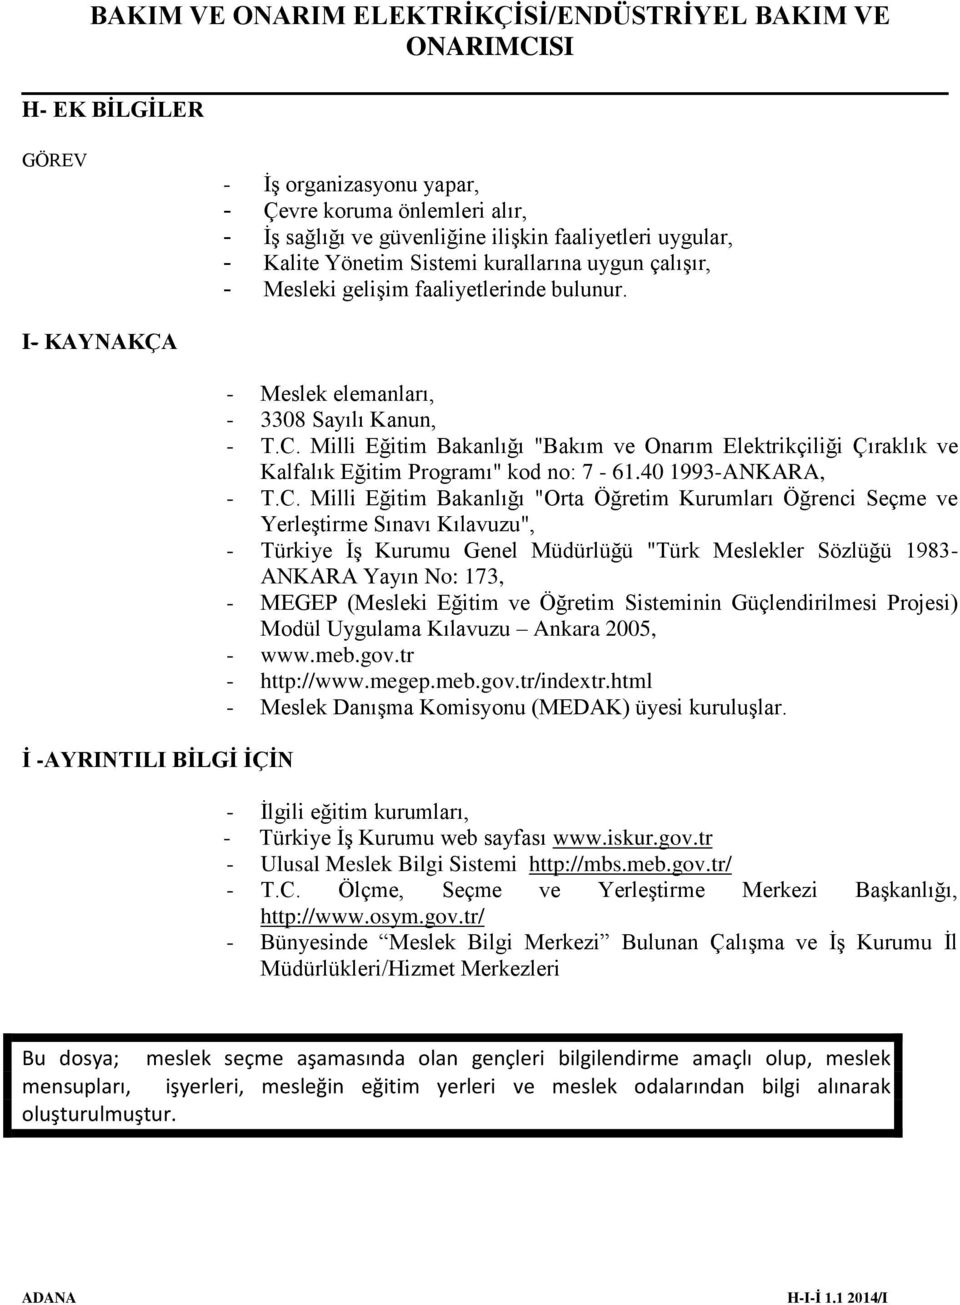 Milli Eğitim Bakanlığı "Bakım ve Onarım Elektrikçiliği Çıraklık ve Kalfalık Eğitim Programı" kod no: 7-61.40 1993-ANKARA, - T.C.